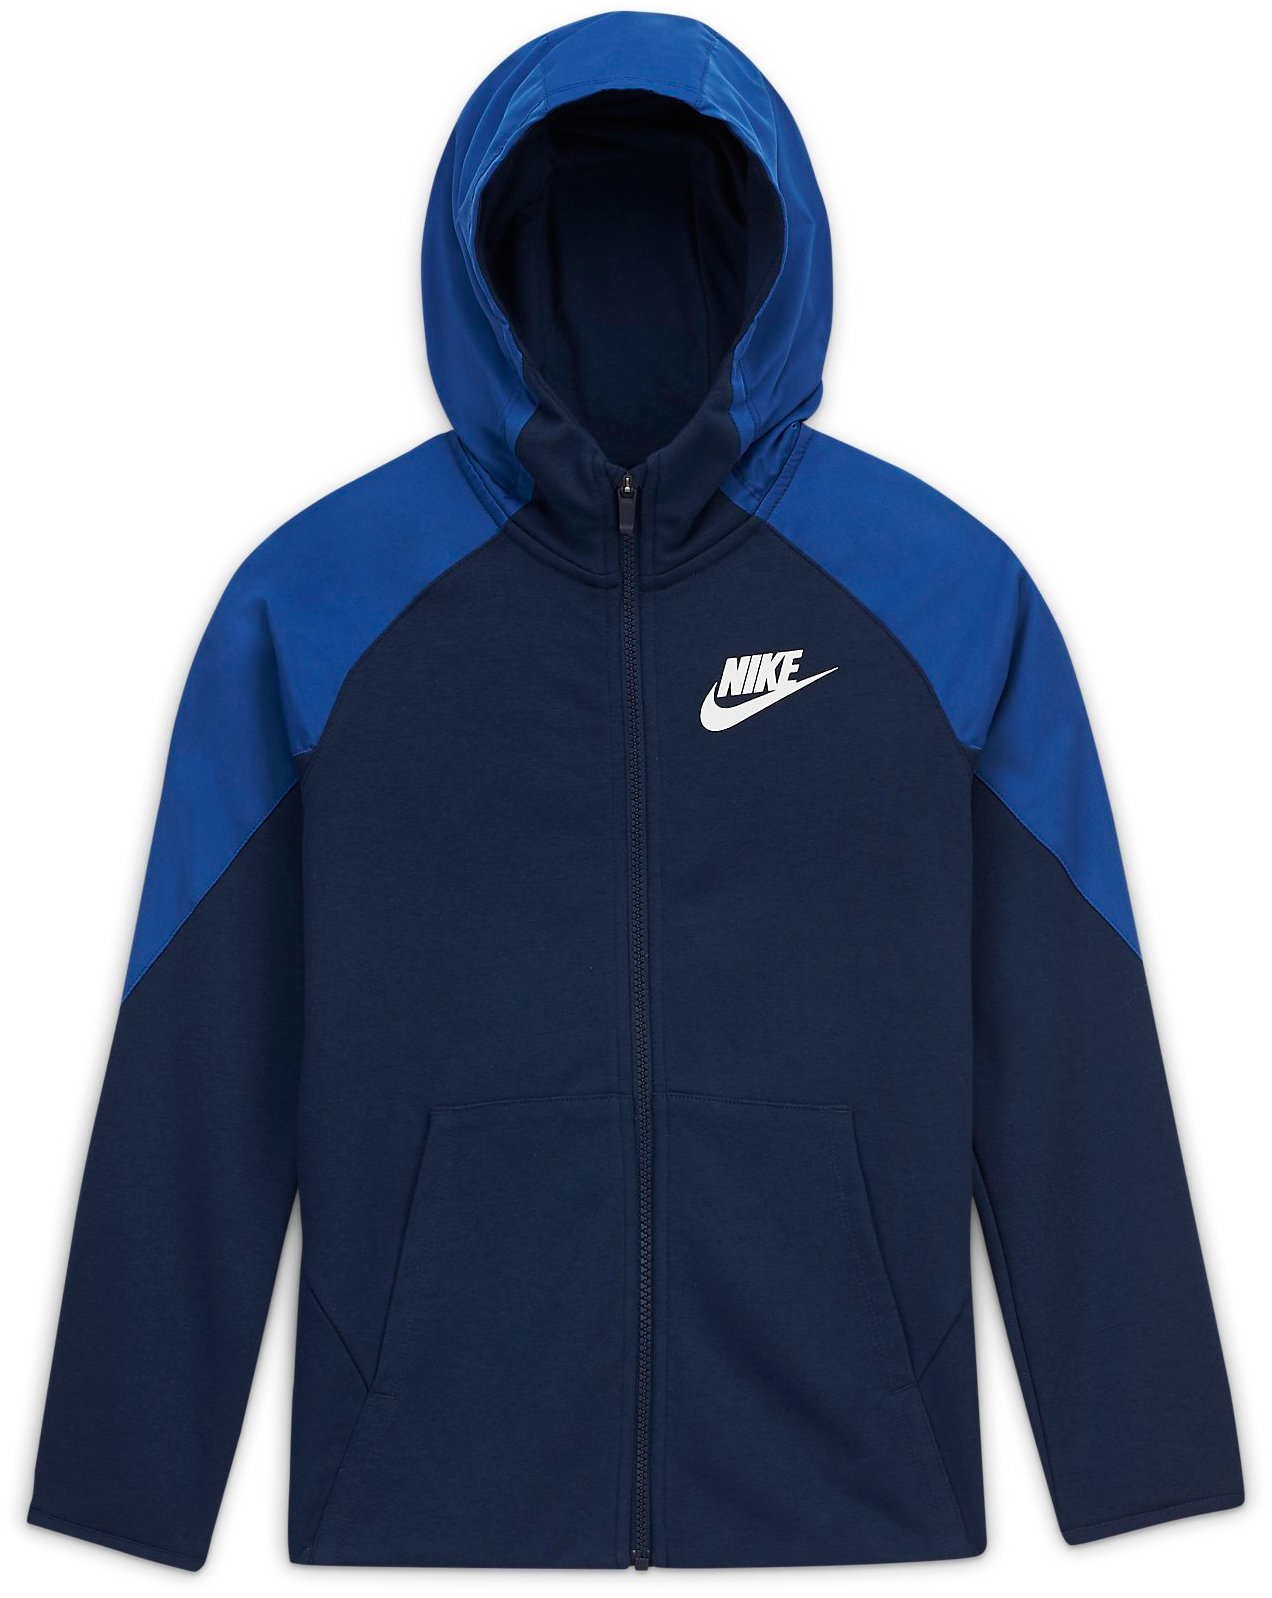 Hooded sweatshirt Nike Y NSW MIXED MTERIAL